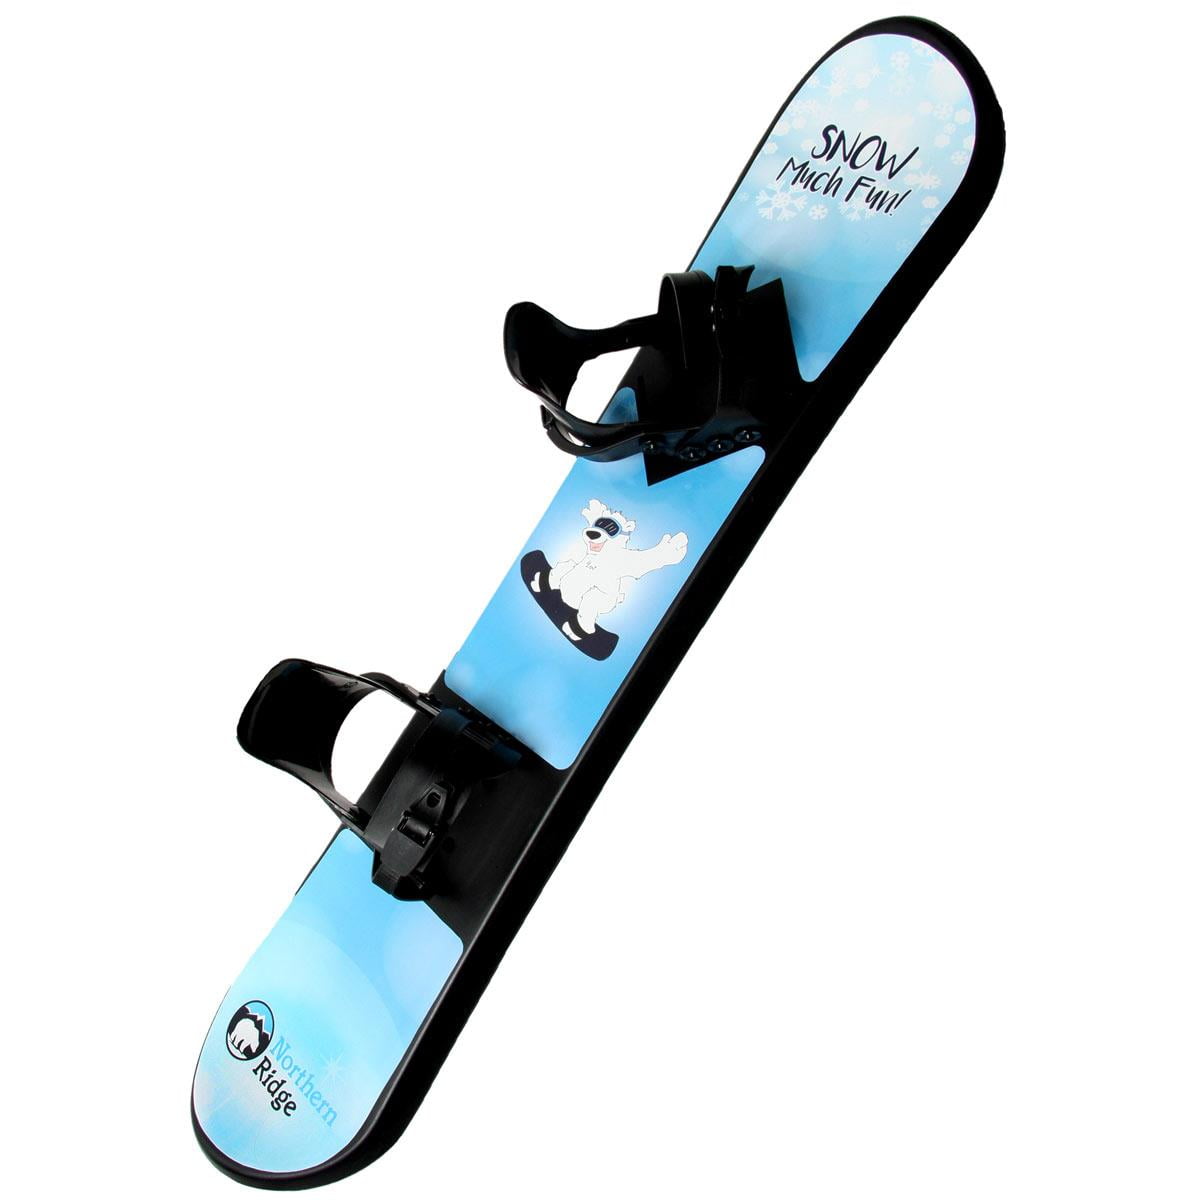 Flexible Flyer Avenger 95cm Beginner's Snowboard 